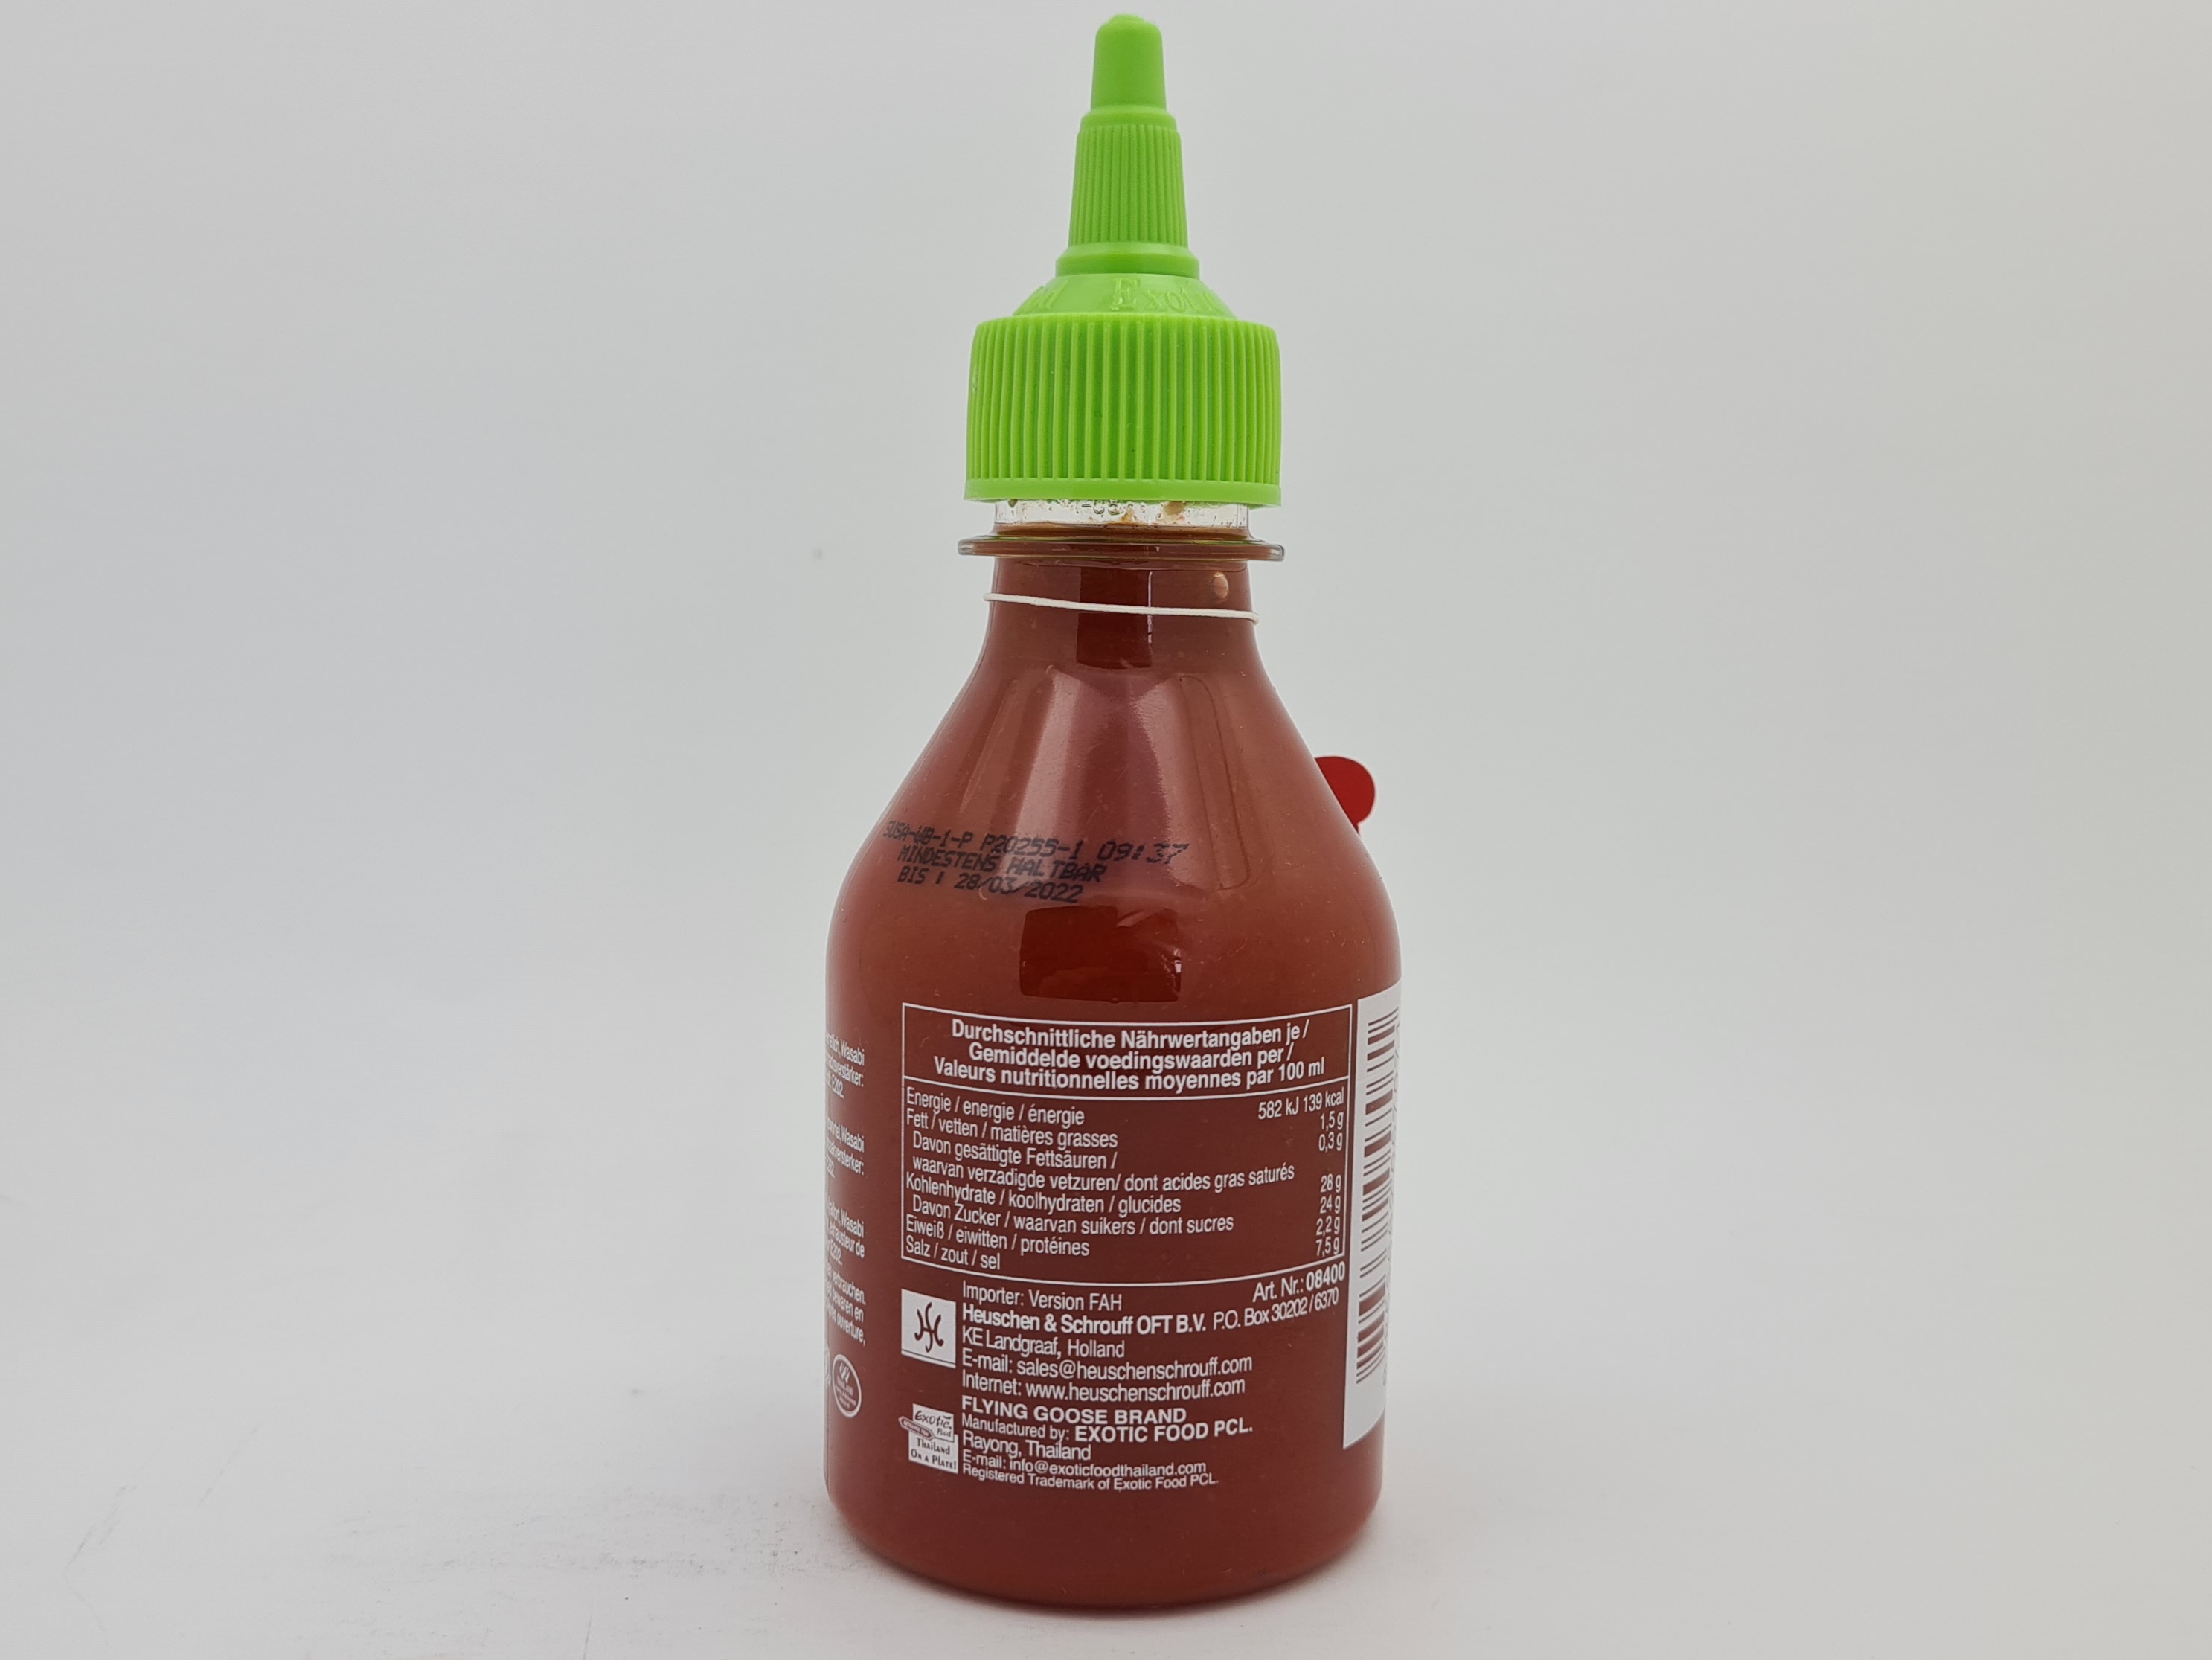 Čili omáčka Sriracha wasabi FGB 200 ml